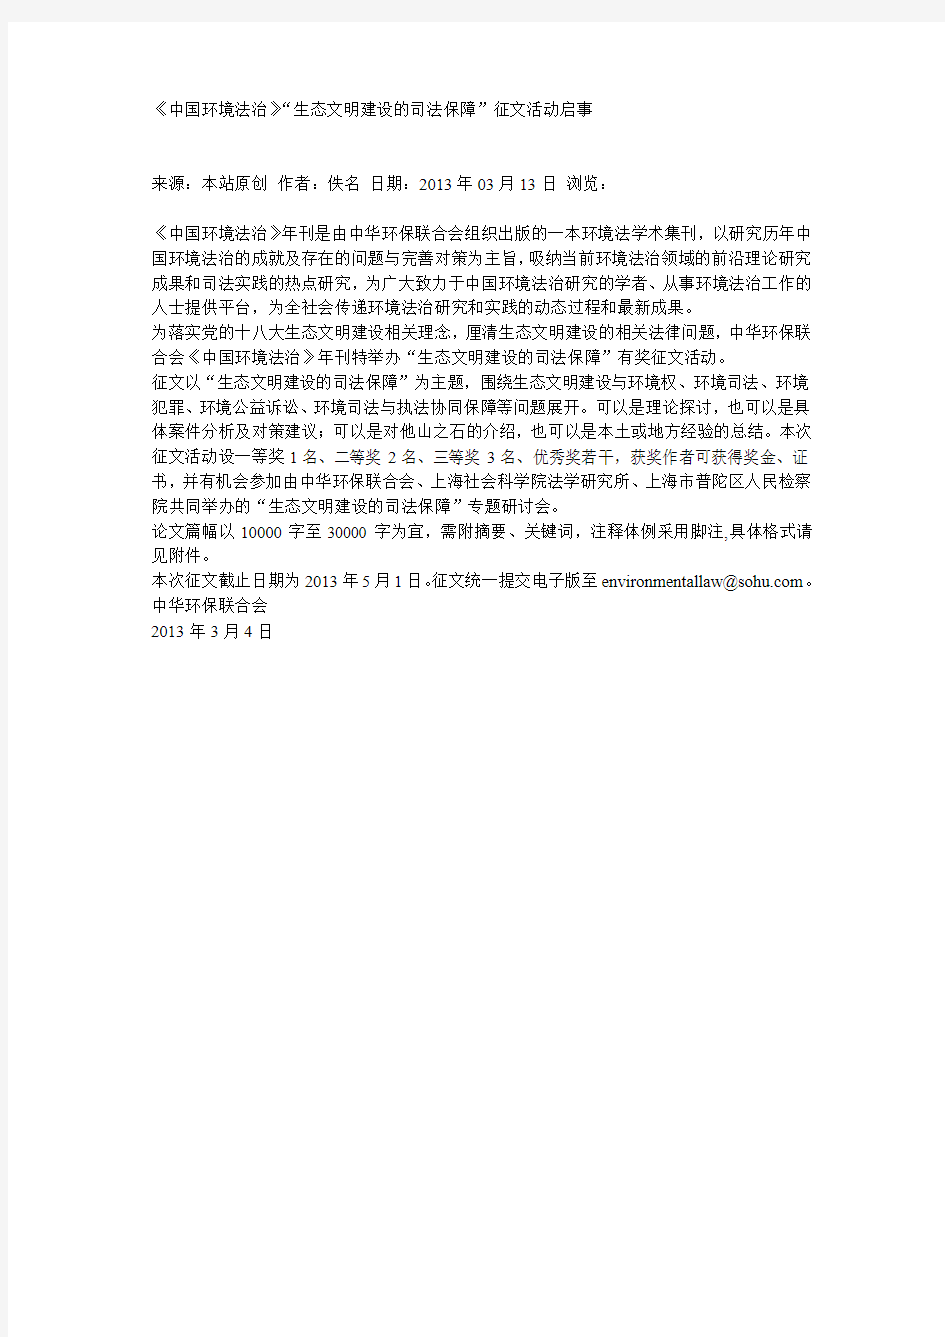 20130501《中国环境法治》“生态文明建设的司法保障”征文活动启事